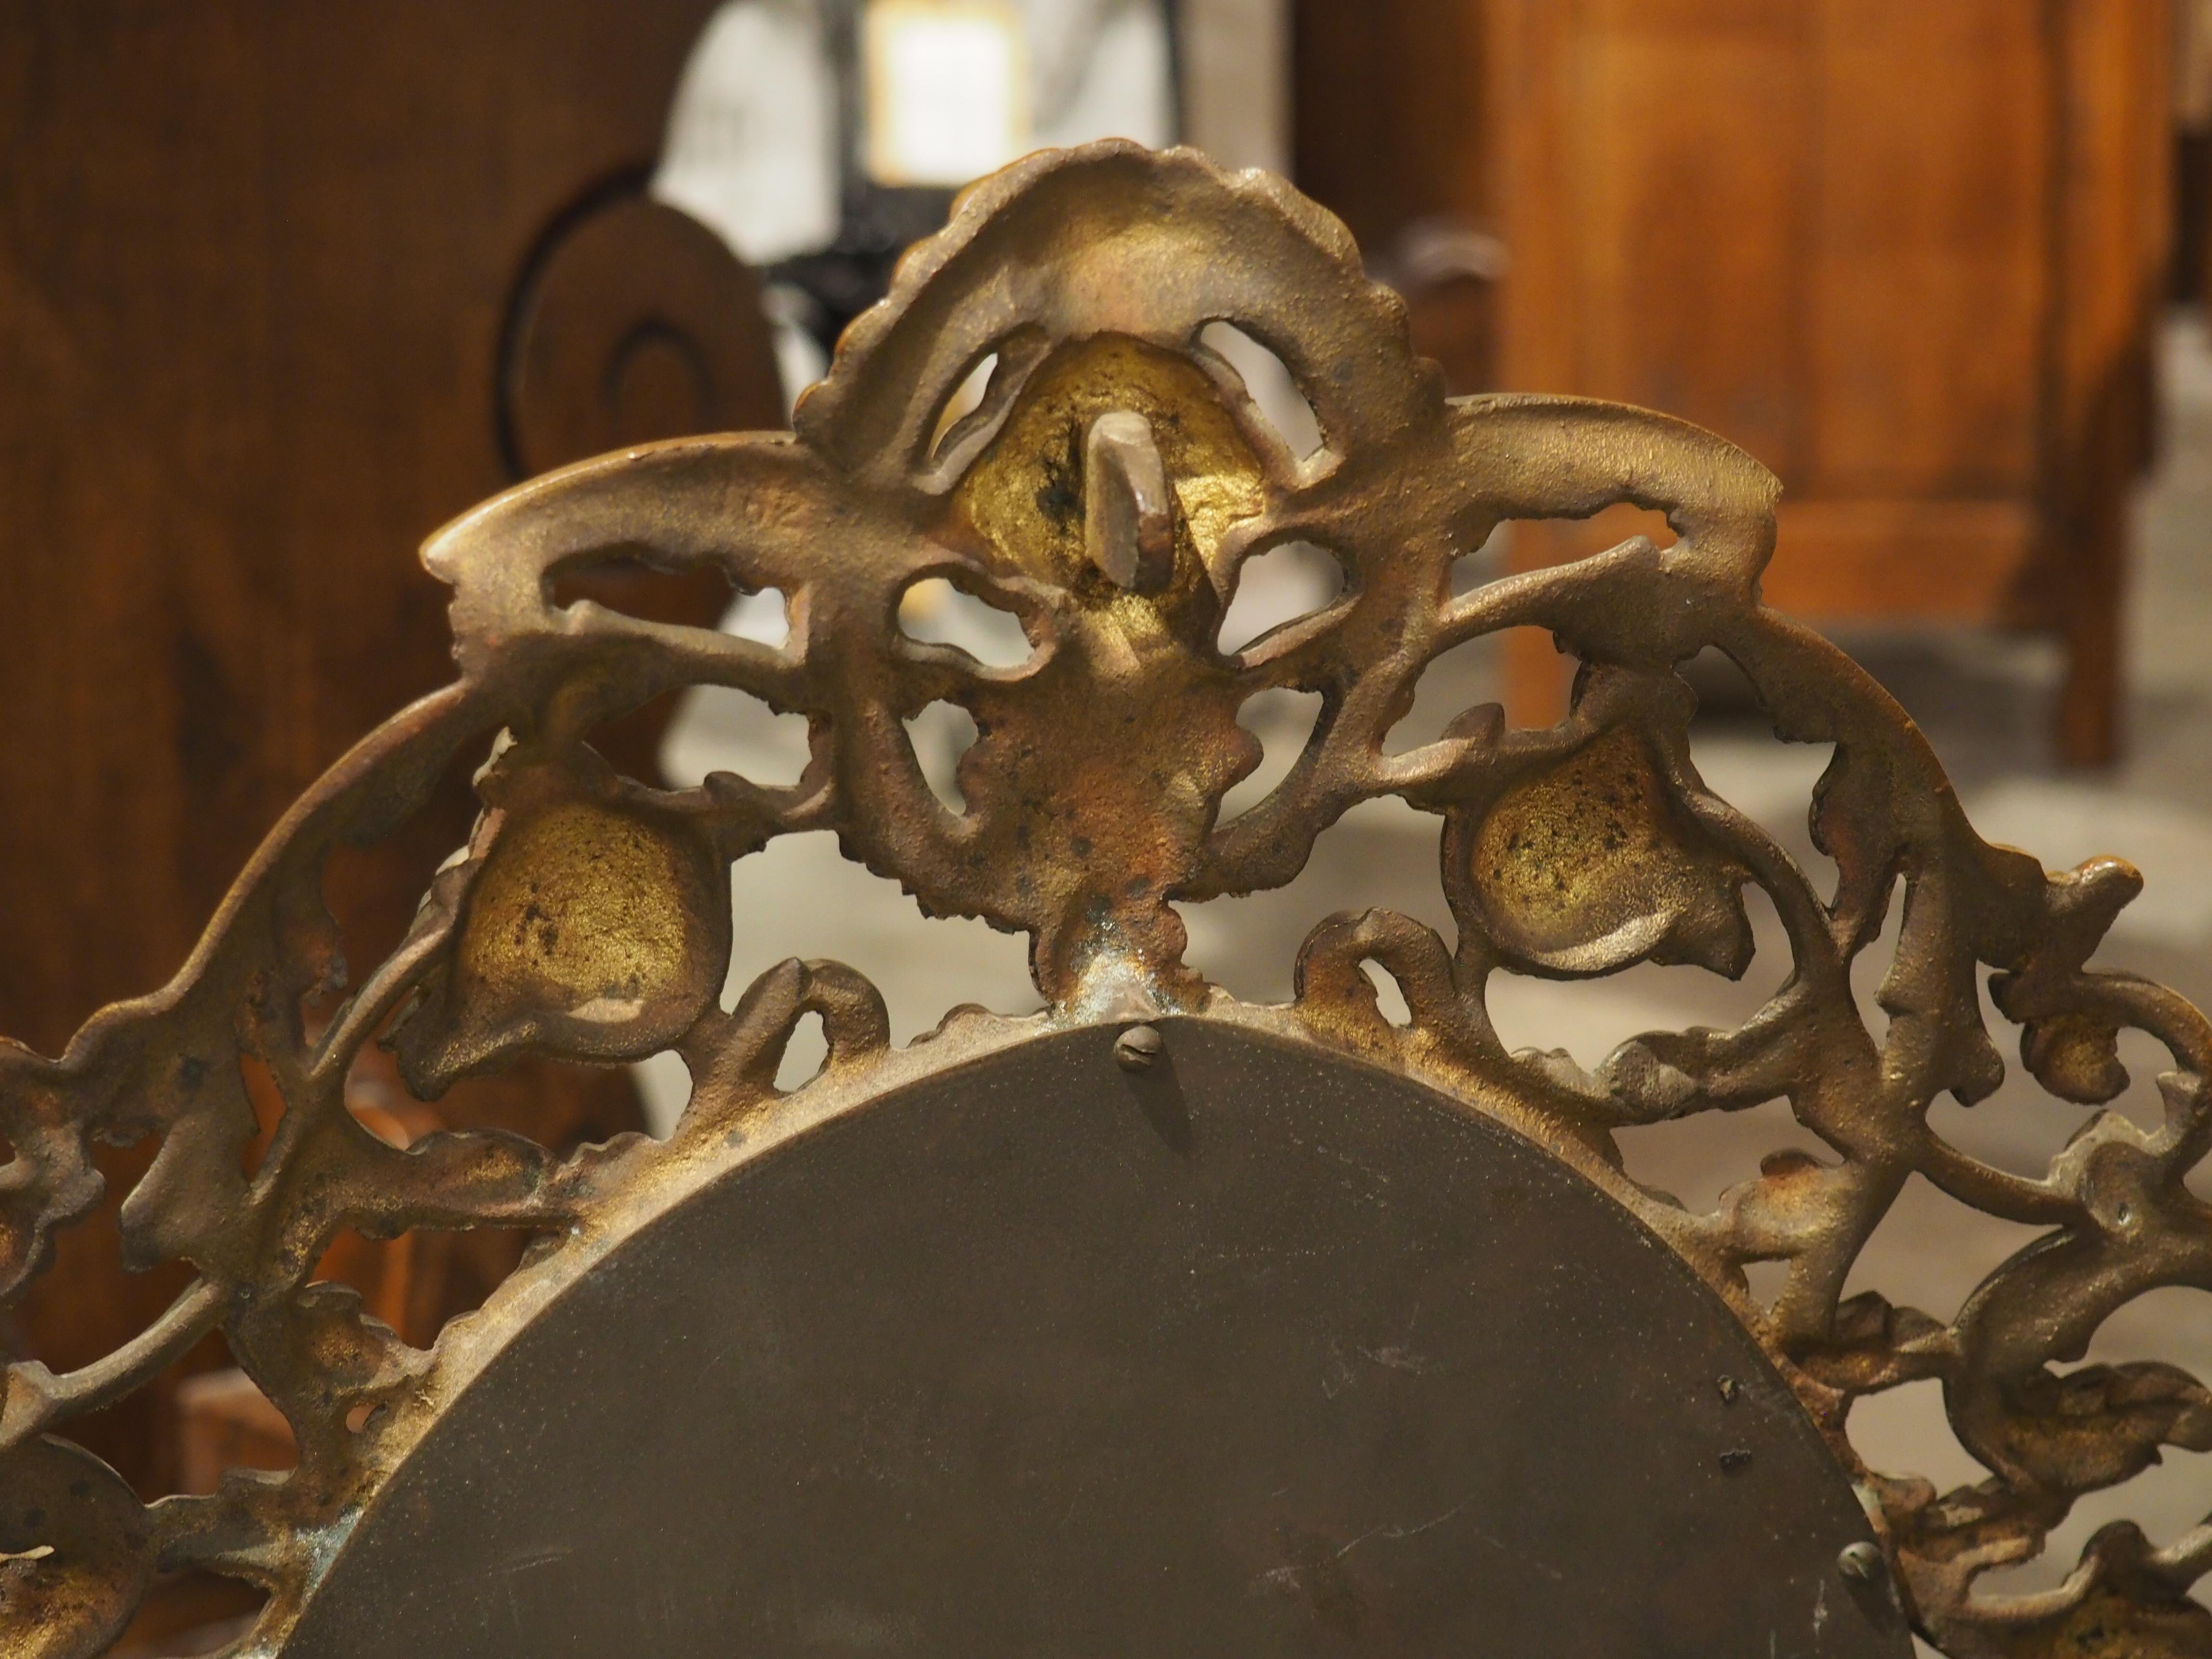 Datant d'environ 1900, ce miroir de table italien présente un petit miroir ovale entouré d'un cadre en bronze doré complexe et ajouré. Une subtile moulure de rais-de-cœur entoure immédiatement le verre, servant de point de départ à l'étalage